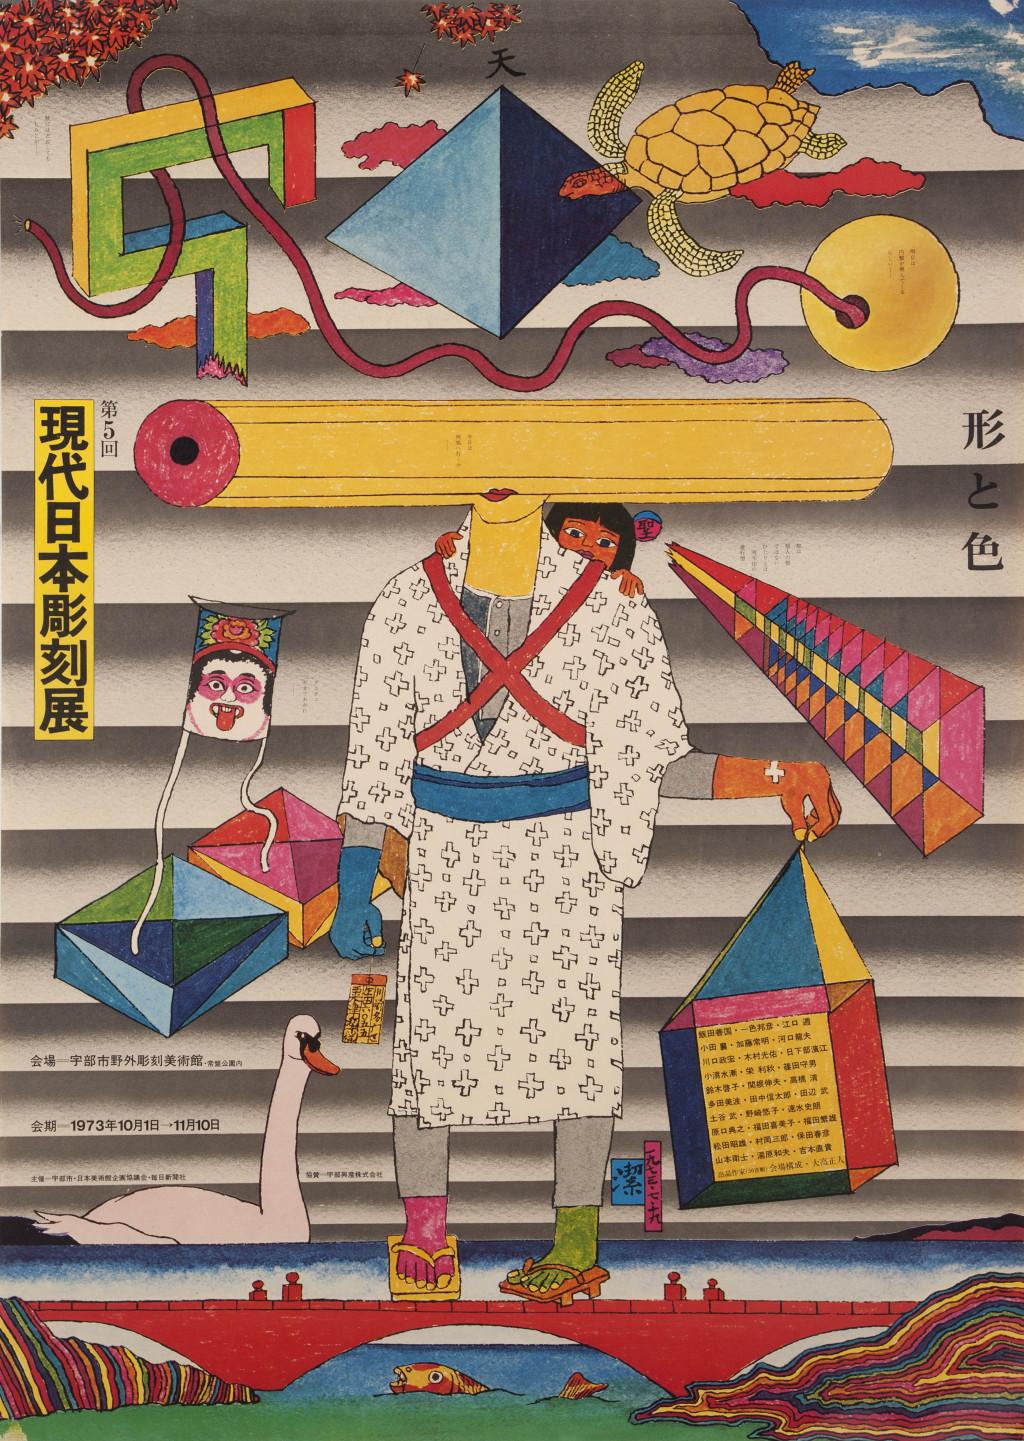 Kiyoshi Awazu, 5e Tentoonstelling van hedendaagse Japanse Beeldhouwkunst, 1973. Collectie Stedelijk Museum Amsterdam